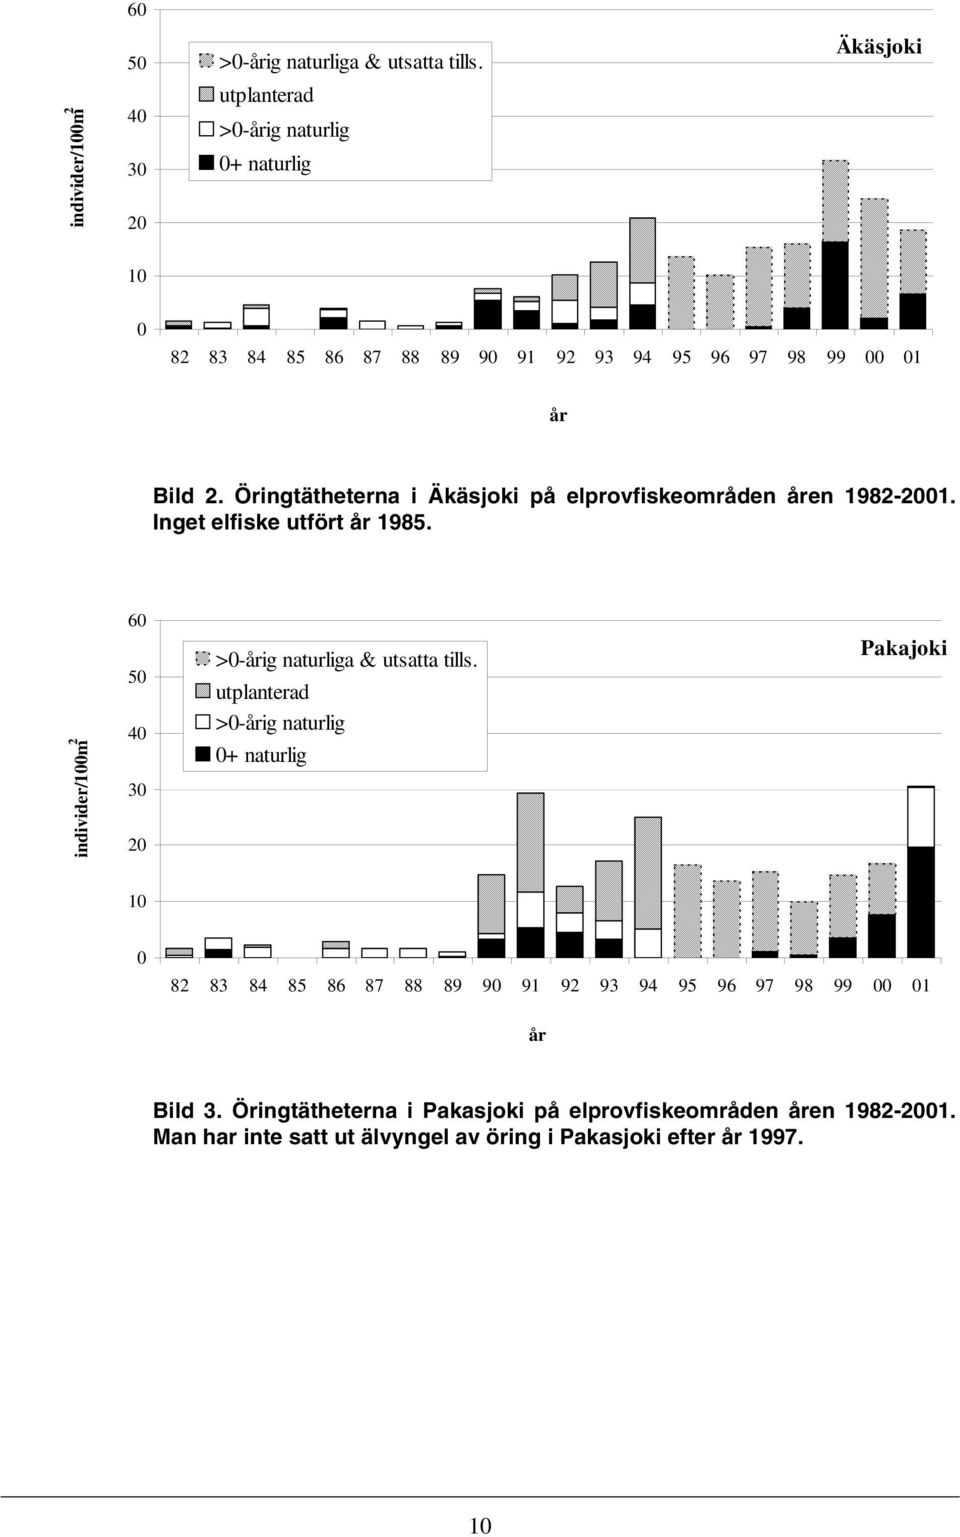 Öringtätheterna i Äkäsjoki på elprovfiskeområden åren 1982-2001. Inget elfiske utfört år 1985.